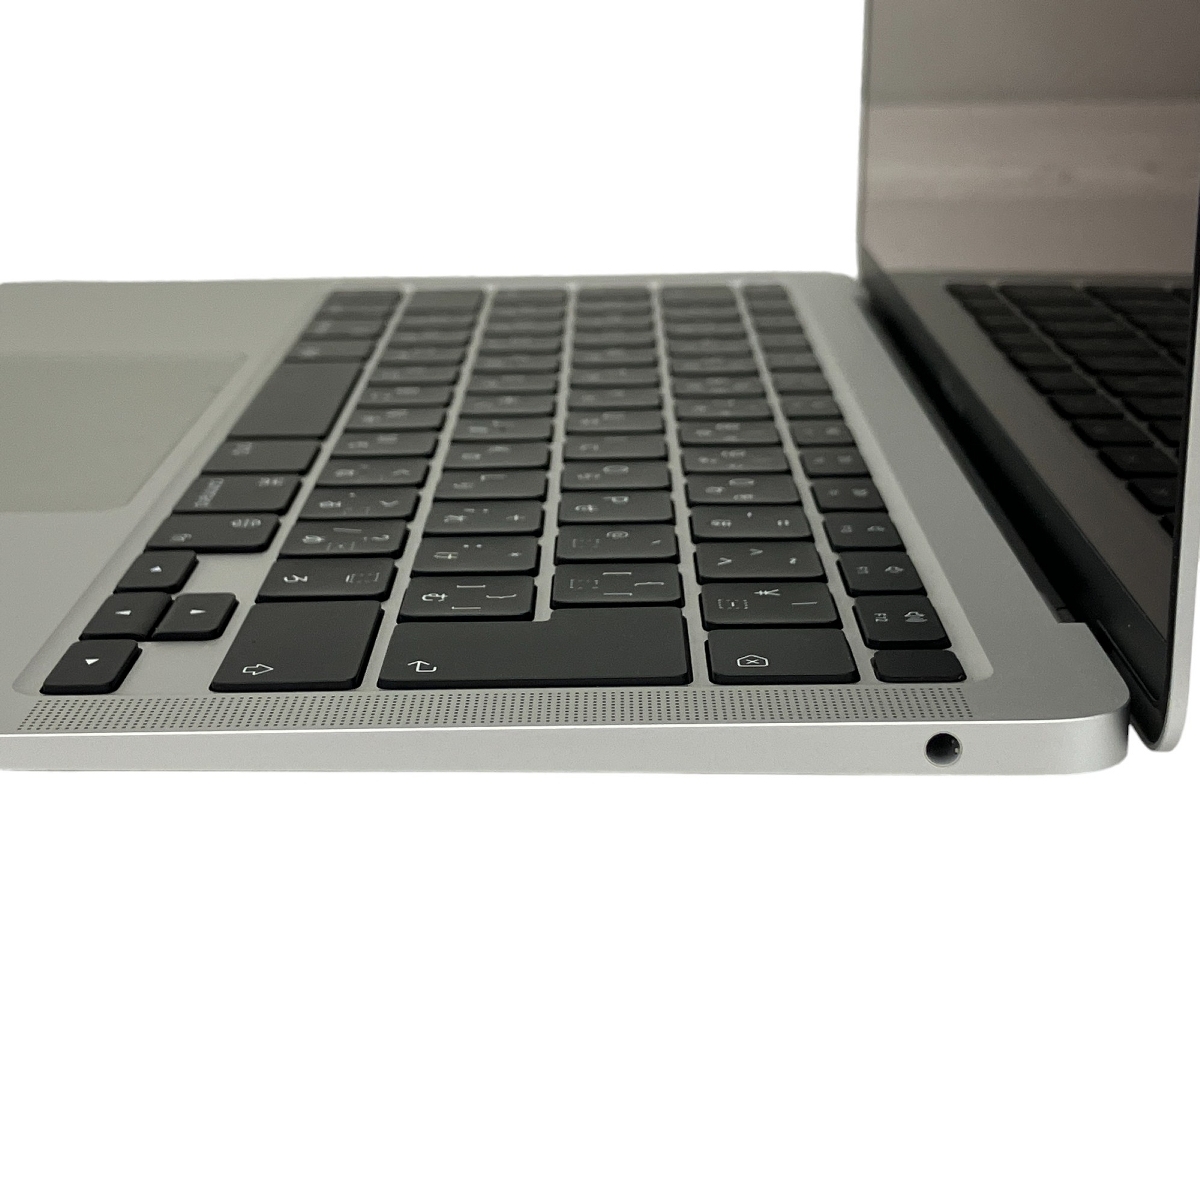 【充放電回数29回】【動作保証】 Apple MacBook Air M1 2020 8C 16GB SSD 256GB 7C シルバー Ventura 中古 美品 T8720889_画像5